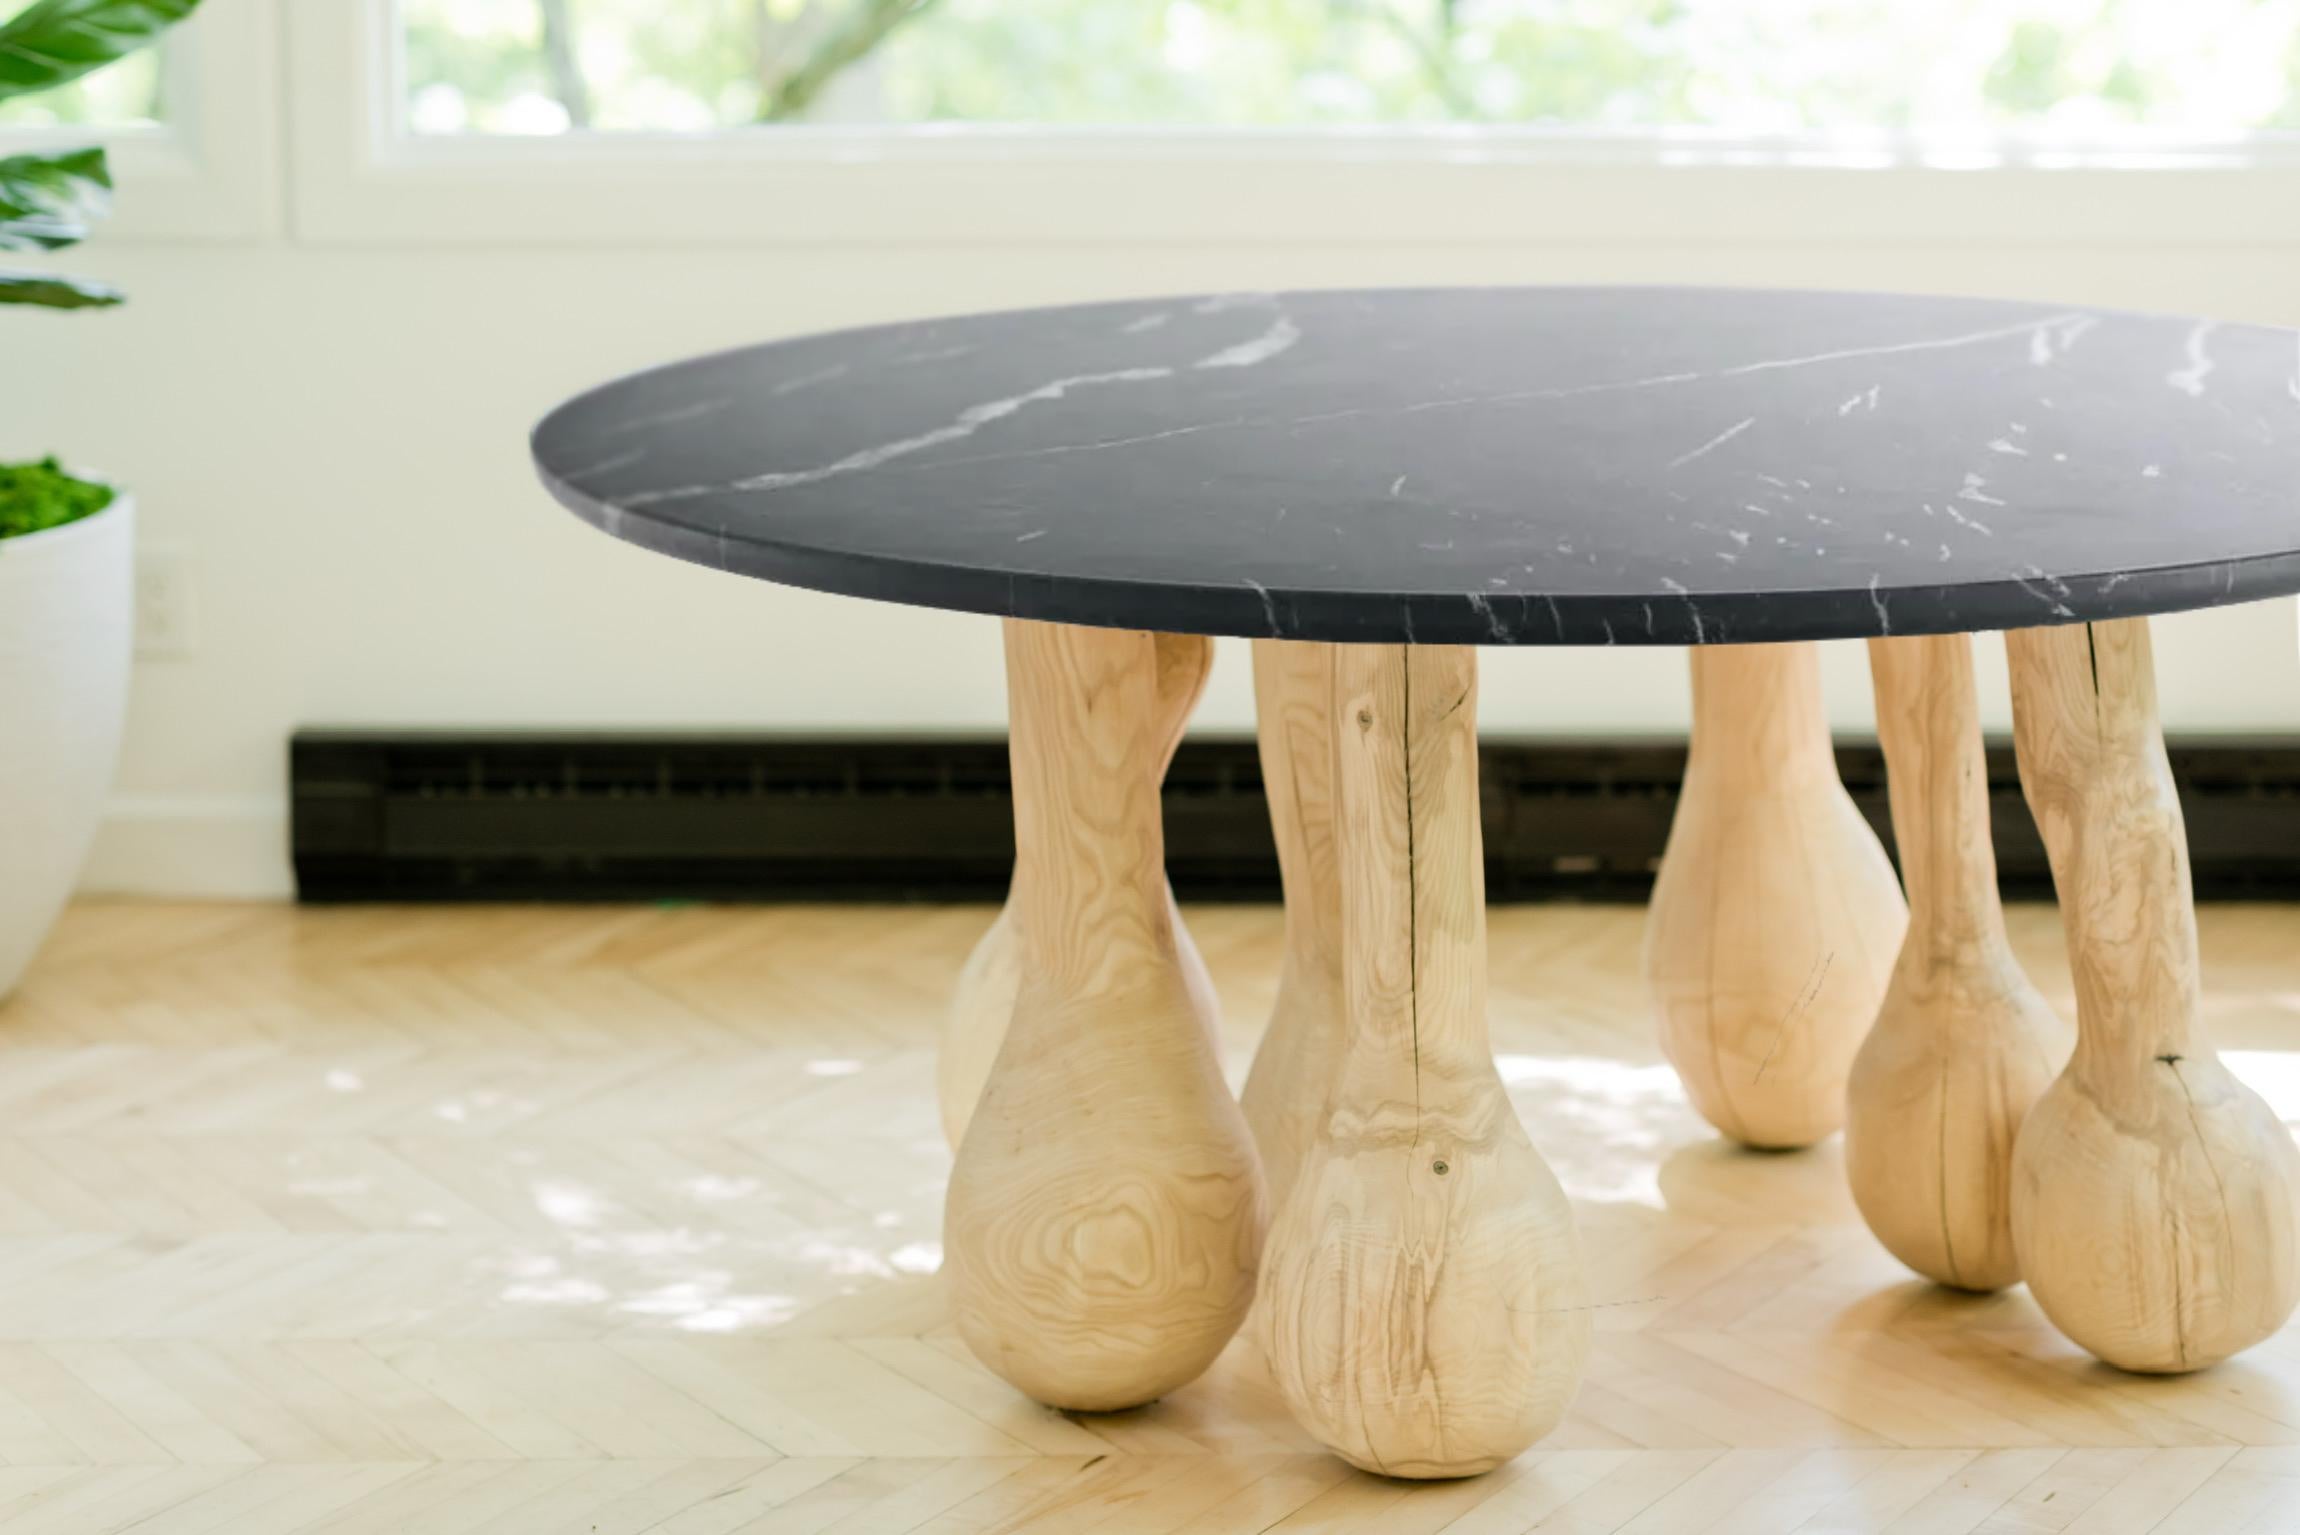 Der aus Holz geschnitzte Tisch steht auf Beinen, die wie Zeittropfen geformt sind - bauchig und voller Schwerkraft, aber dennoch vollkommen ausgewogen. 

In diesem Werk stellt der Künstler den traditionellen Esstisch als ein lebendiges, atmendes